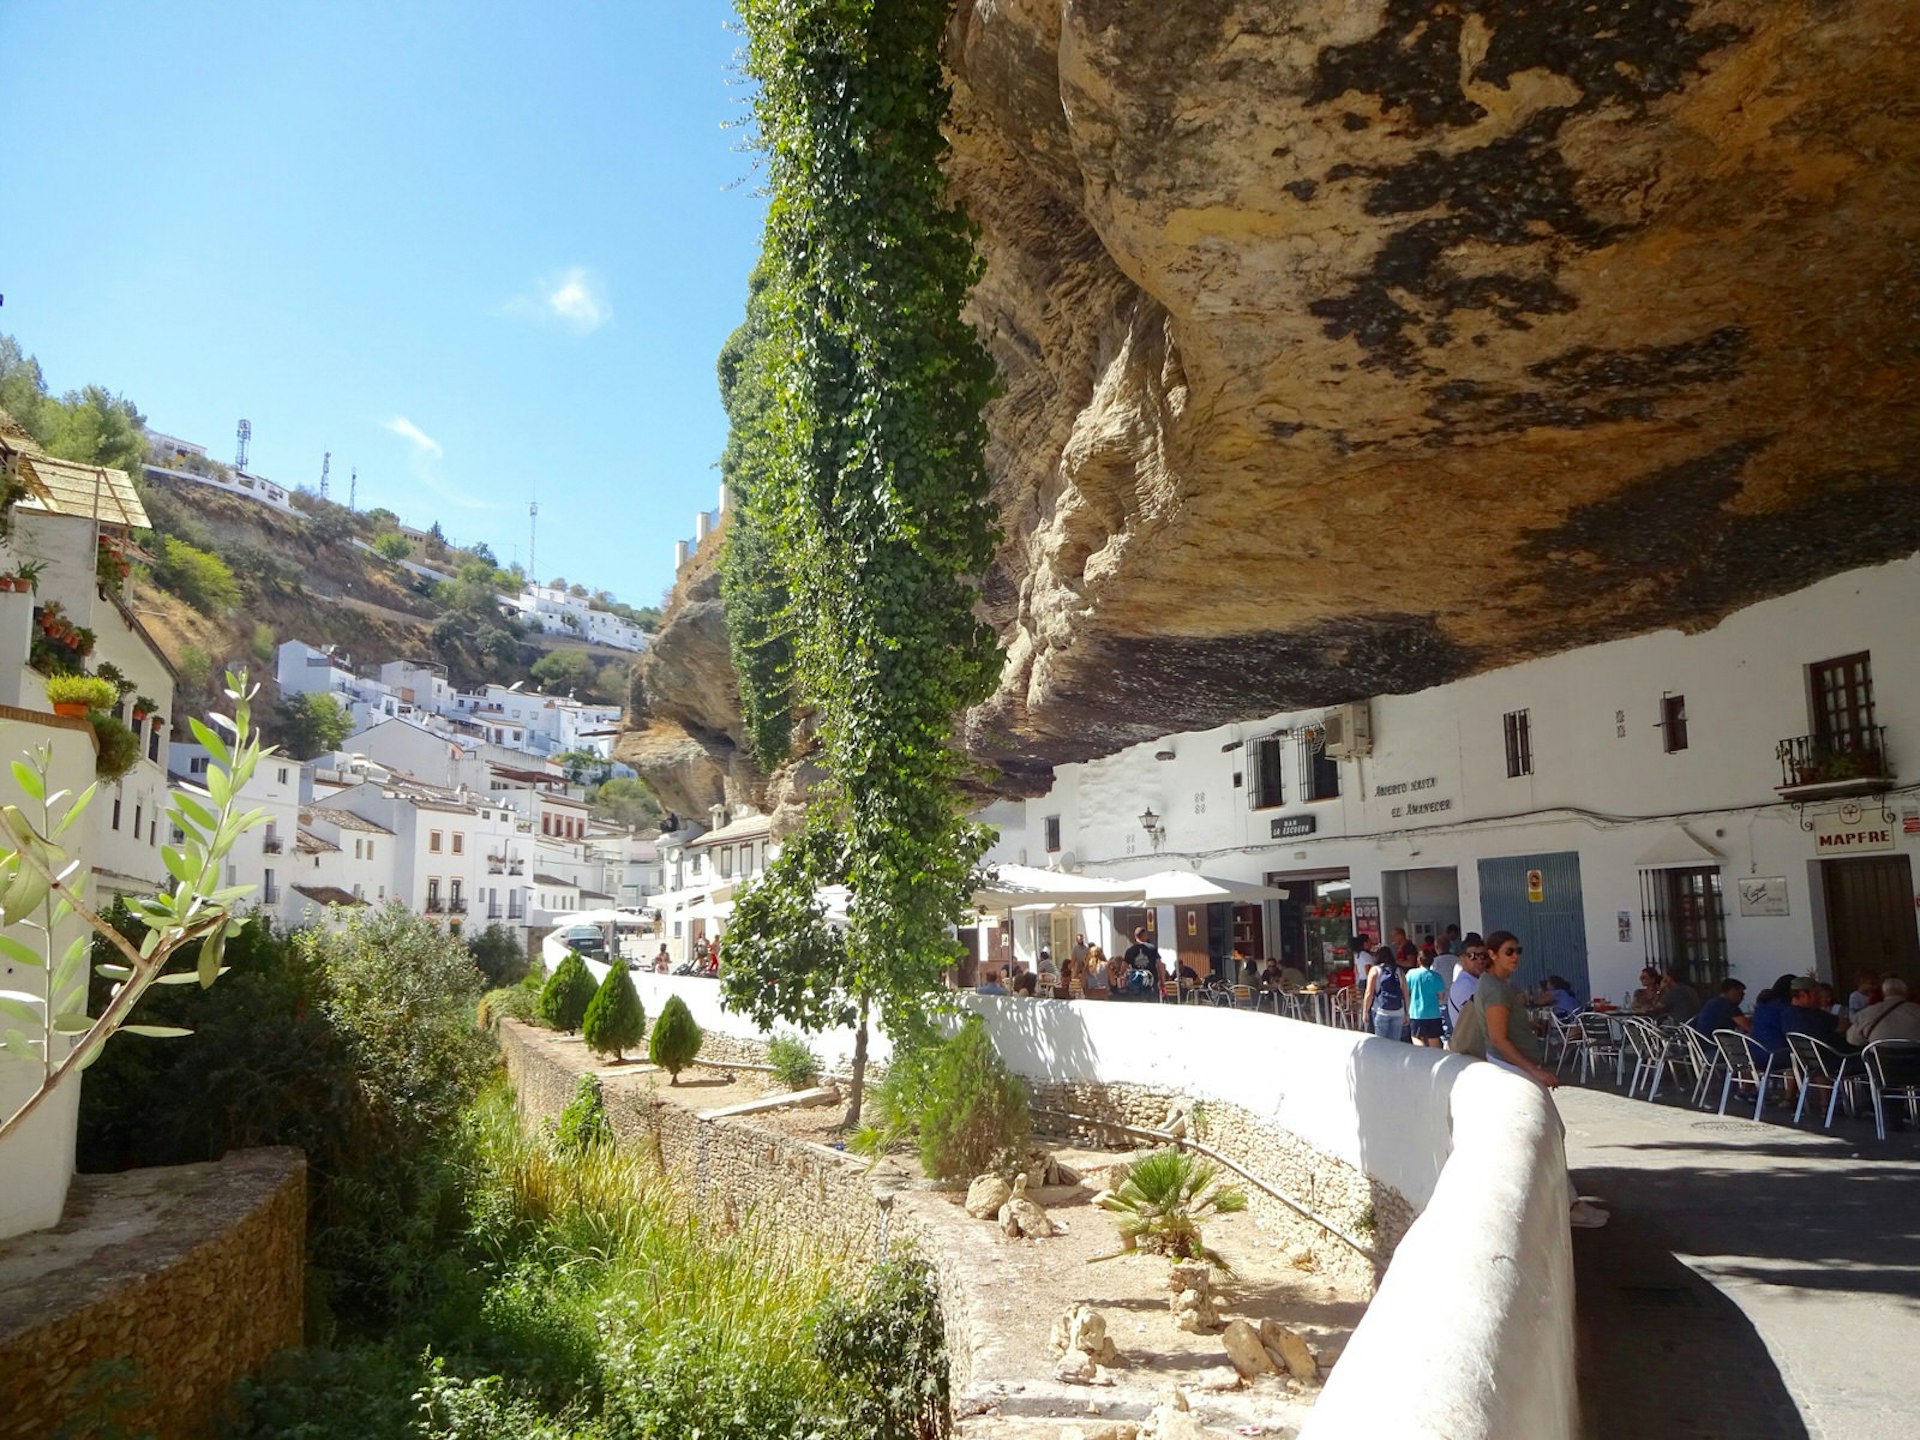 Cave bars and restaurants along Calle Cuevas del Sol in Setenil de las Bodegas